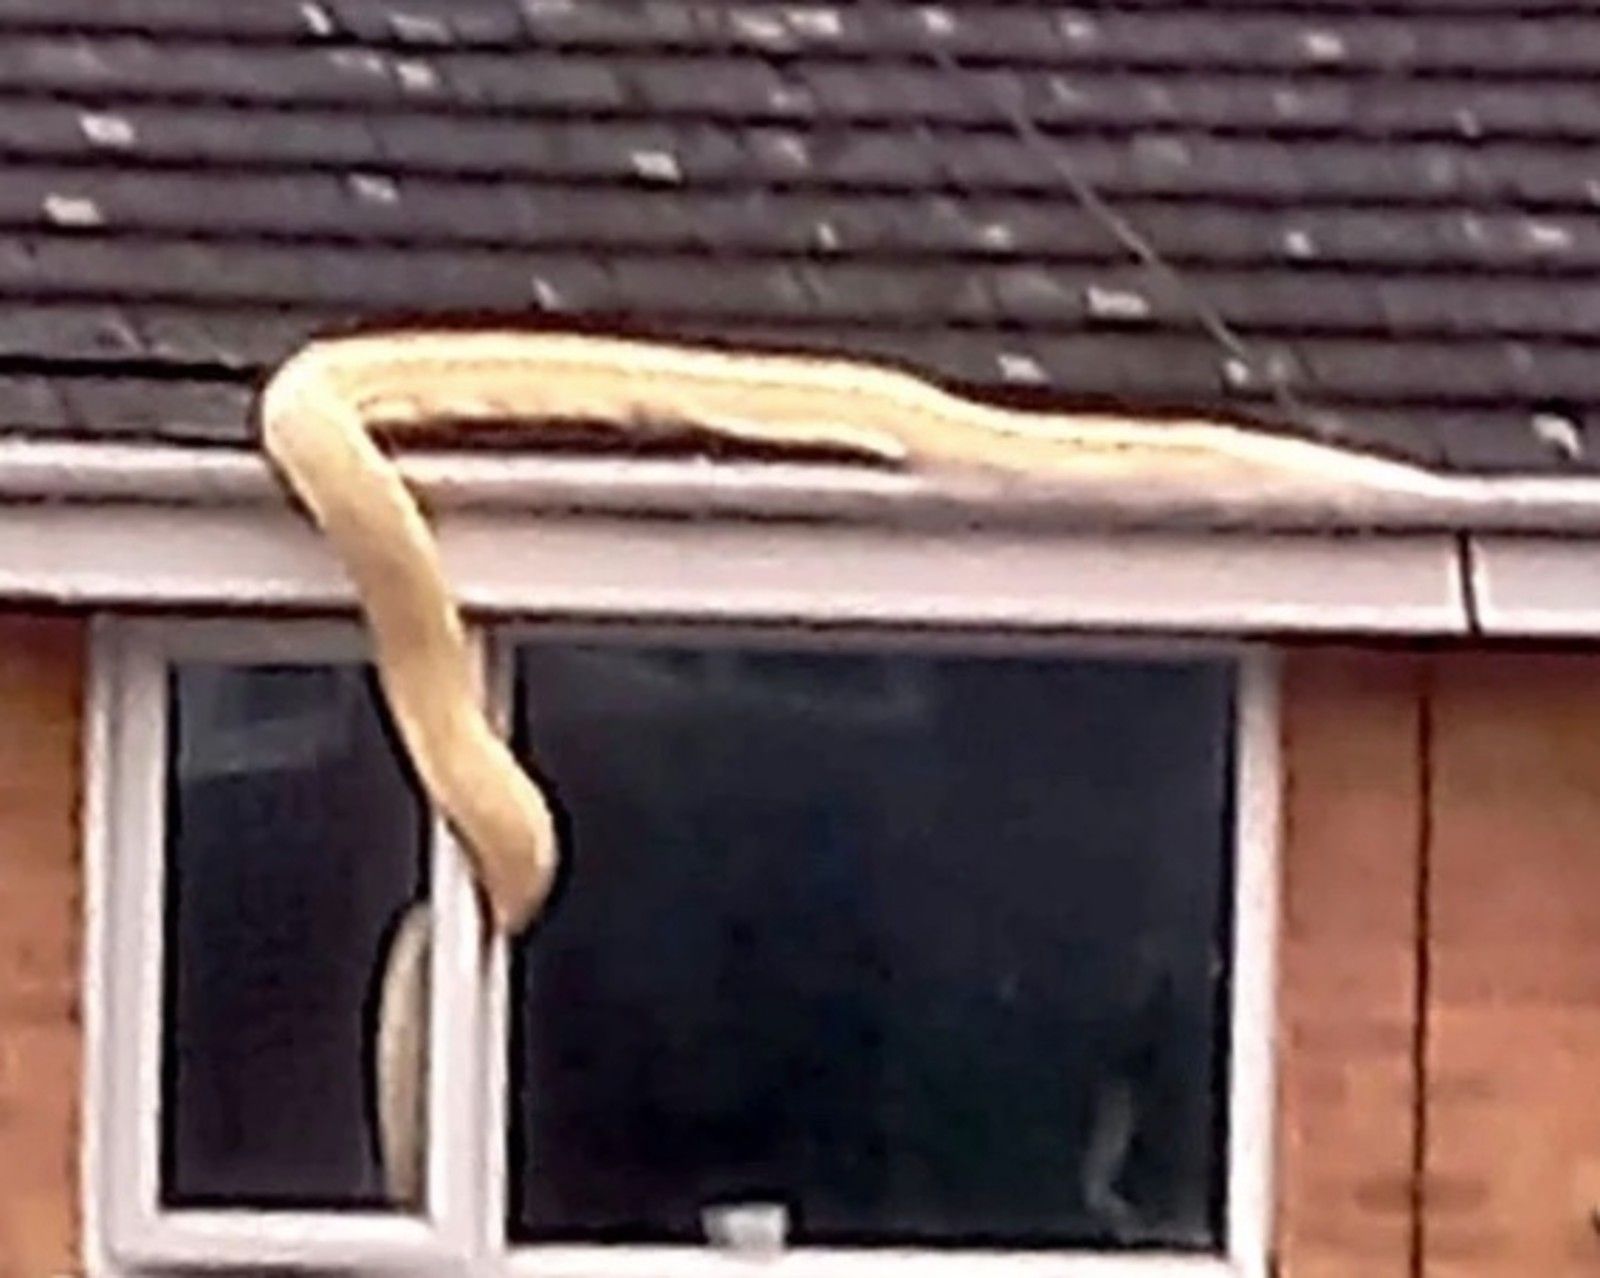 Se asomó por la ventana y vio una serpiente de 38 kilos entrando en la casa del vecino